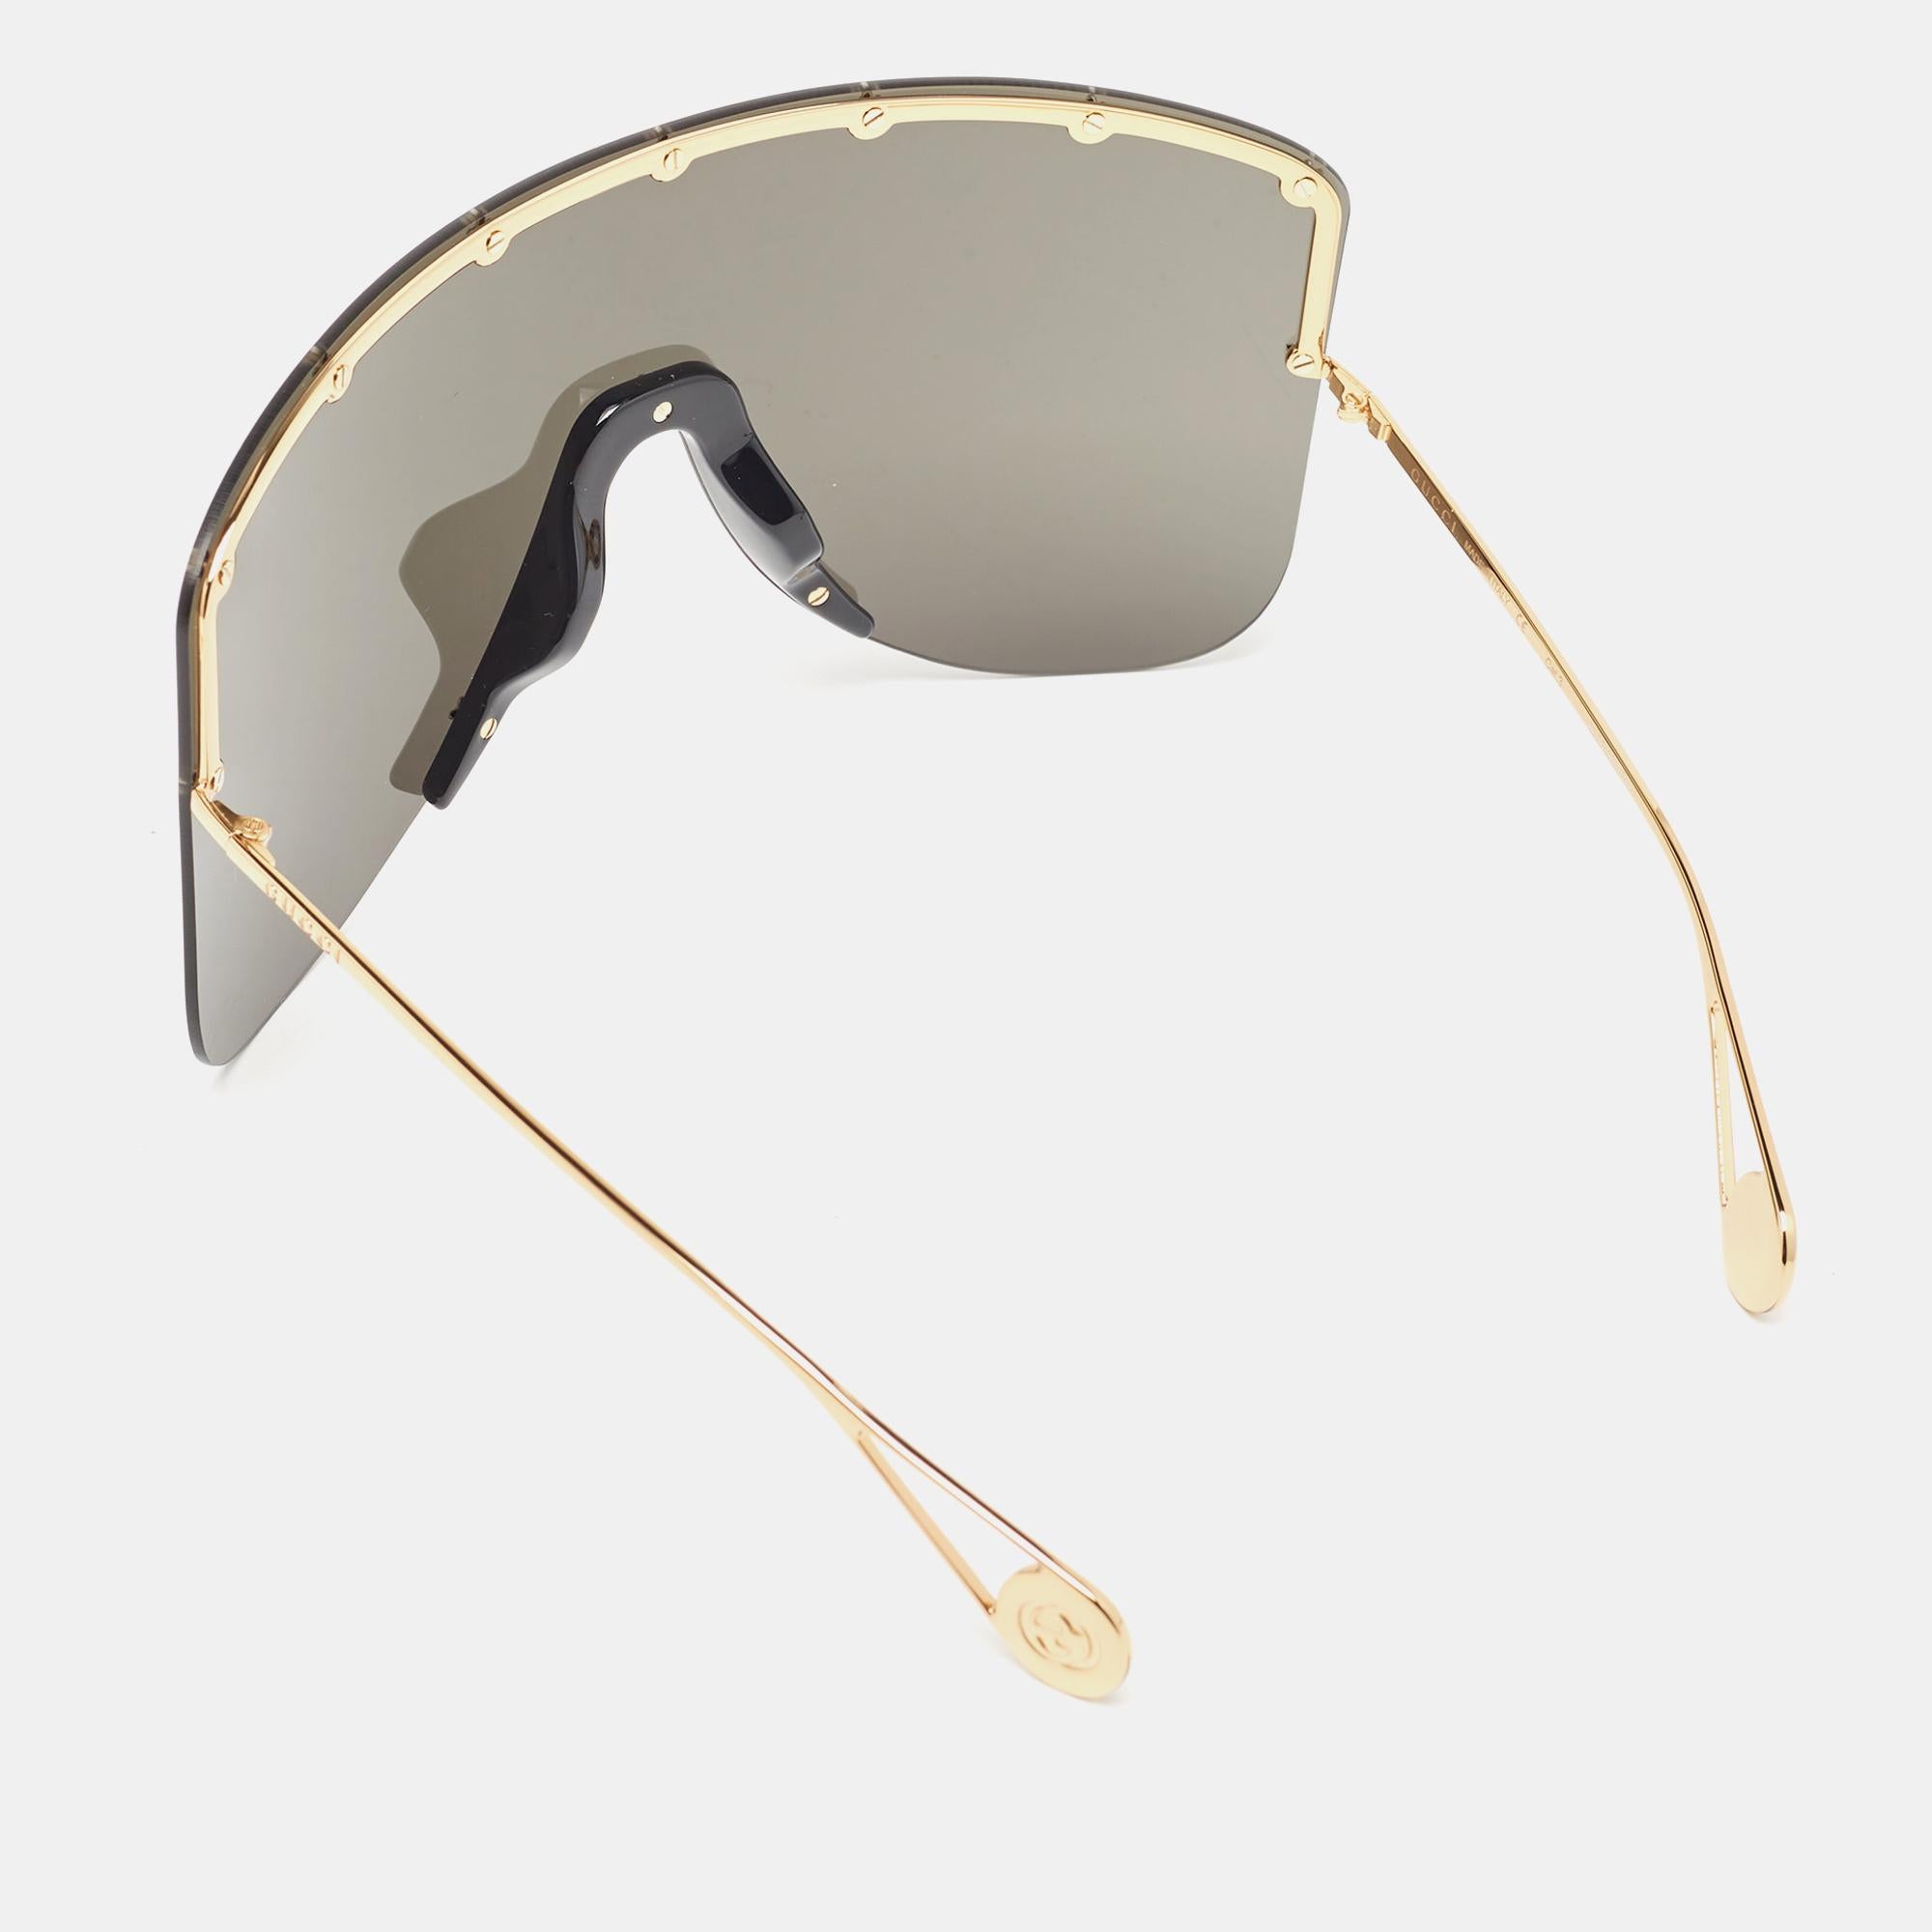 Eine auffällige Sonnenbrille von Gucci ist mit Sicherheit ein wertvoller Kauf. Mit ihrem trendigen Rahmen und den augenschonenden Gläsern ist die Sonnenbrille ideal für den ganzen Tag.

Enthält: Original-Etui, Original-Schutzumschlag, Info-Booklet

